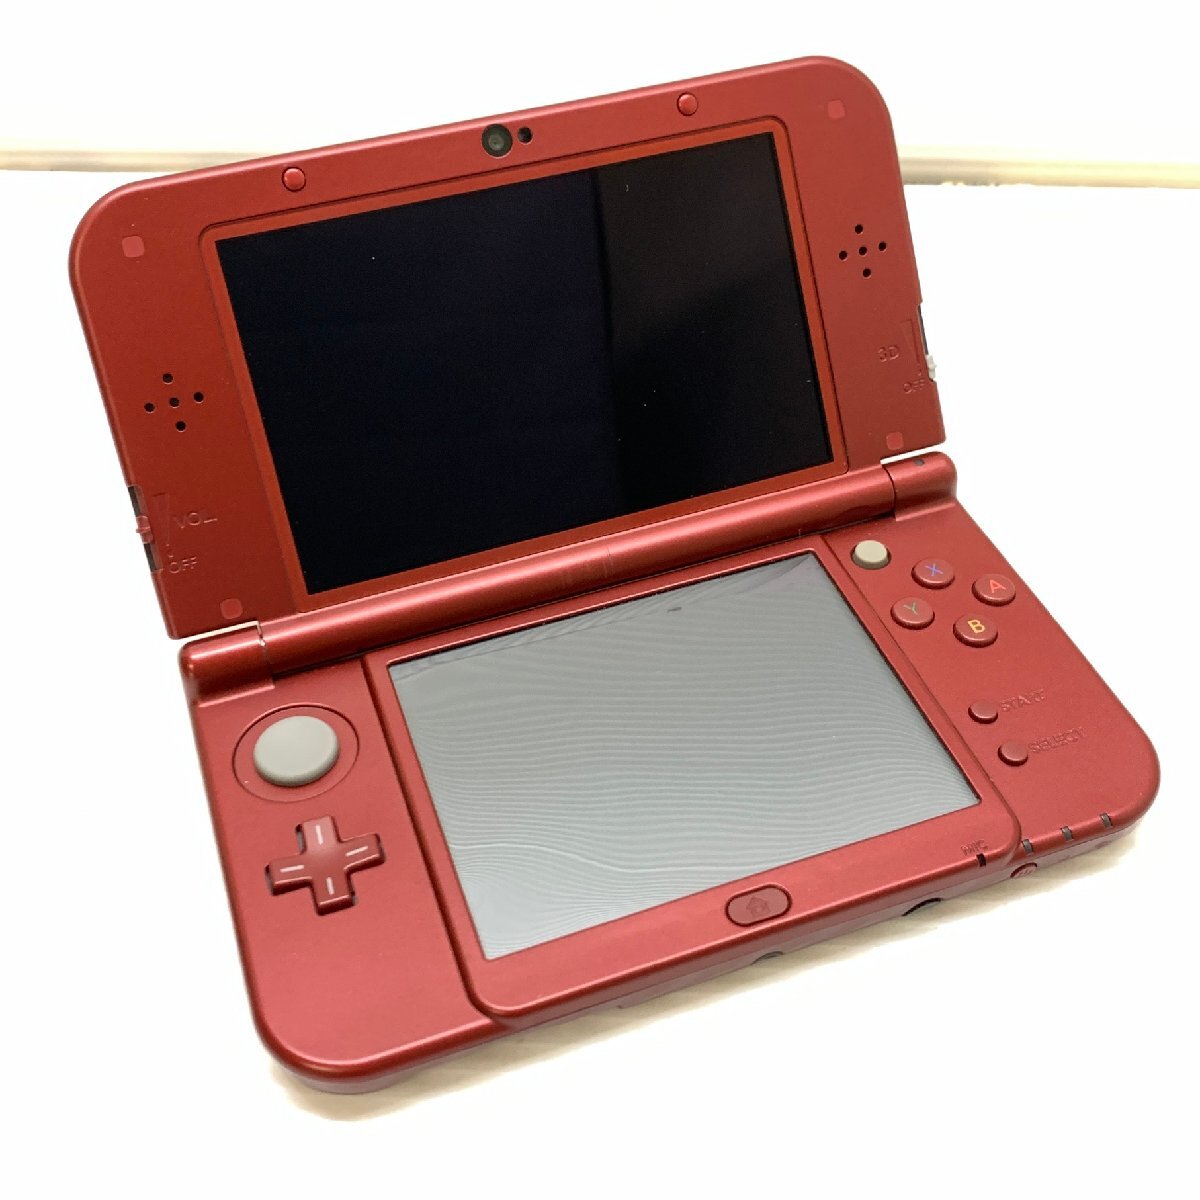 MIN【現状渡し品】 MSMG Nintendo ニンテンドー New 3DS LL 本体のみ メタリックレッド RED-001 RED-S-JPN-C0 〈36-240330-CN-13-MIN〉_画像3